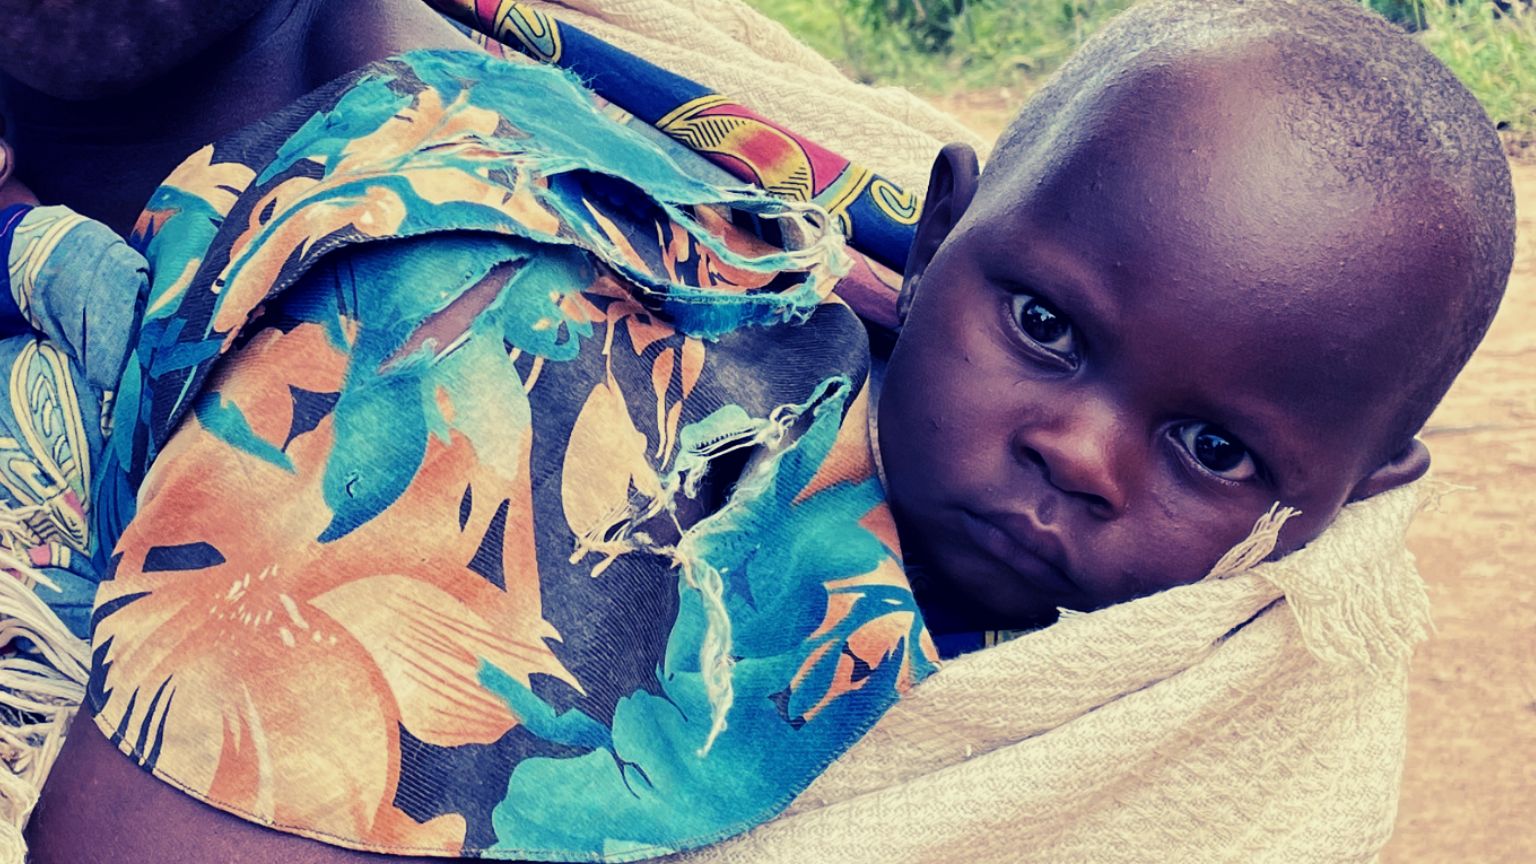 Kenia dient als Testgebiet für die biometrische Verfolgung von Impfstoffen für Säuglinge